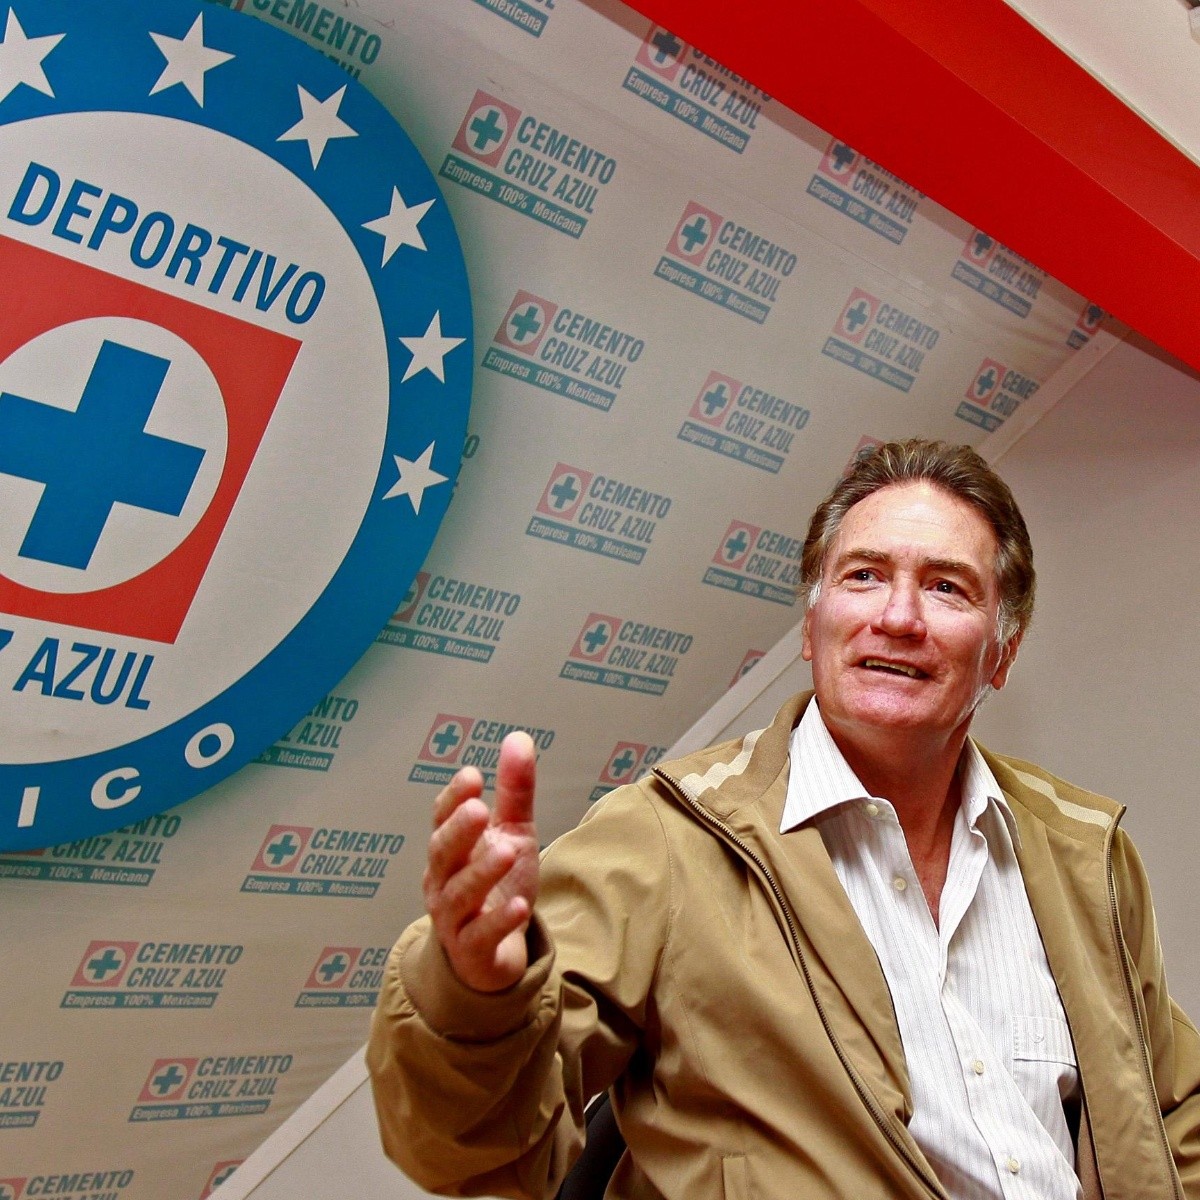 Hablar de Cruz Azul es hablar de Nacho Trelles, Marín y otros tantos": Alberto  Quintano | Vamos Cruz Azul